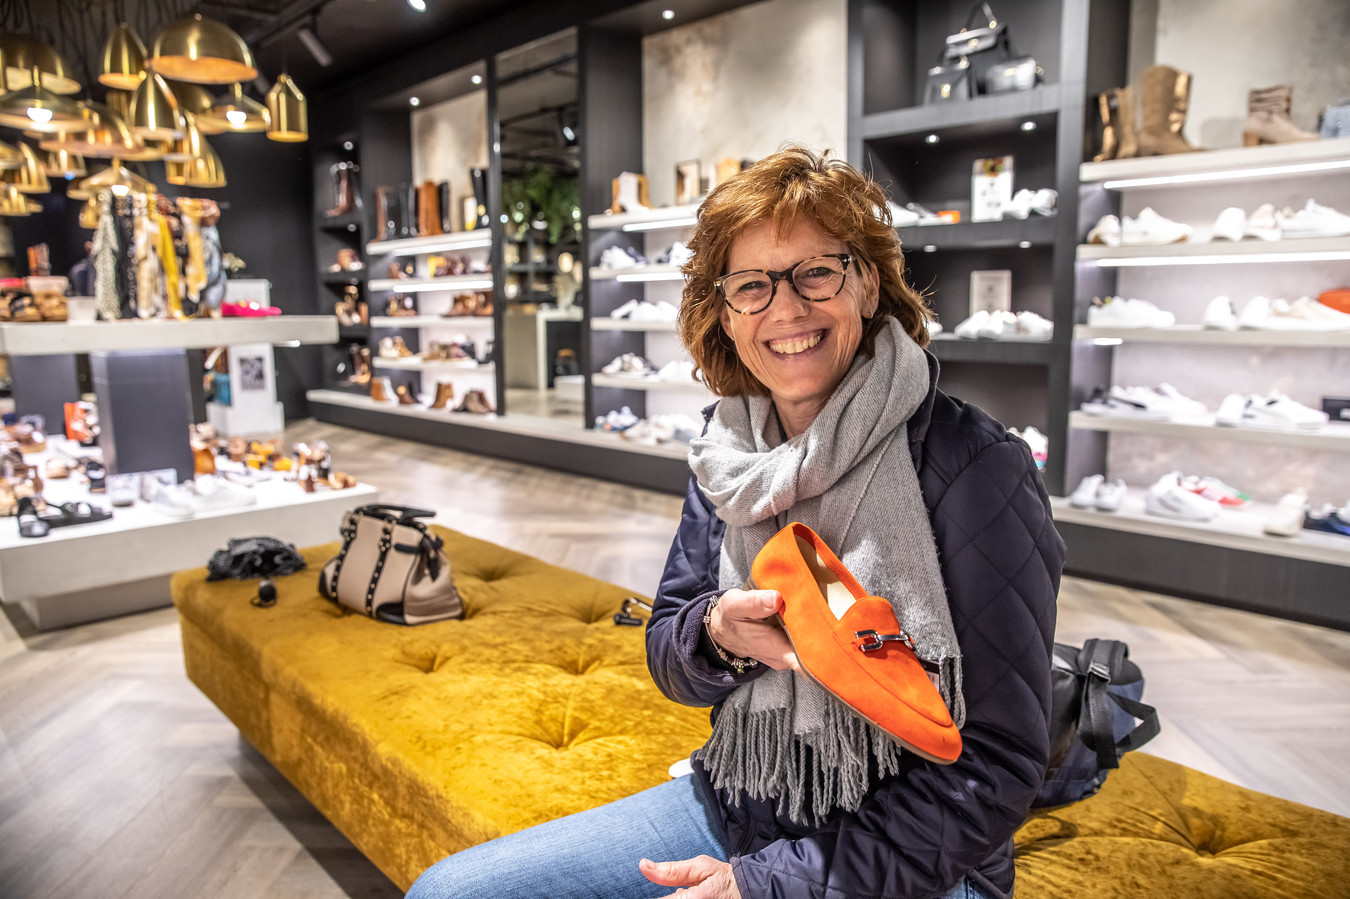 landen Rodeo Uittrekken Schoenen kopen we steeds vaker online. Toch opent Omoda drie nieuwe zaken  in Oost-Nederland. Hoe zit dat? | Foto | tubantia.nl